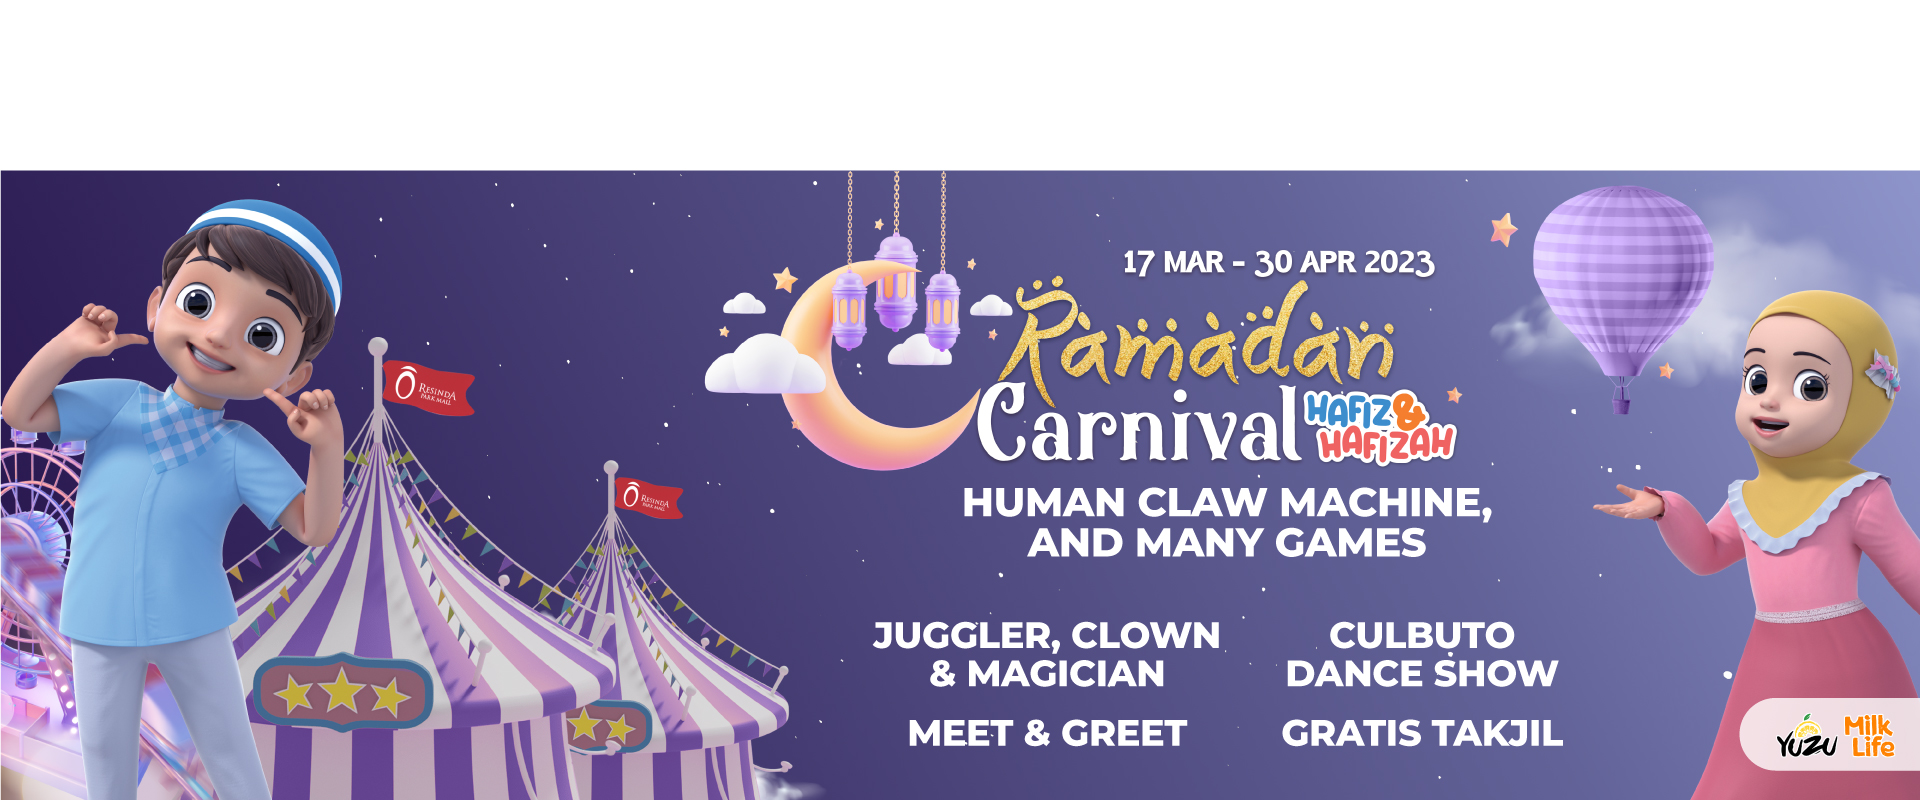 Website-Slider_Ramadan-Carnival-2023